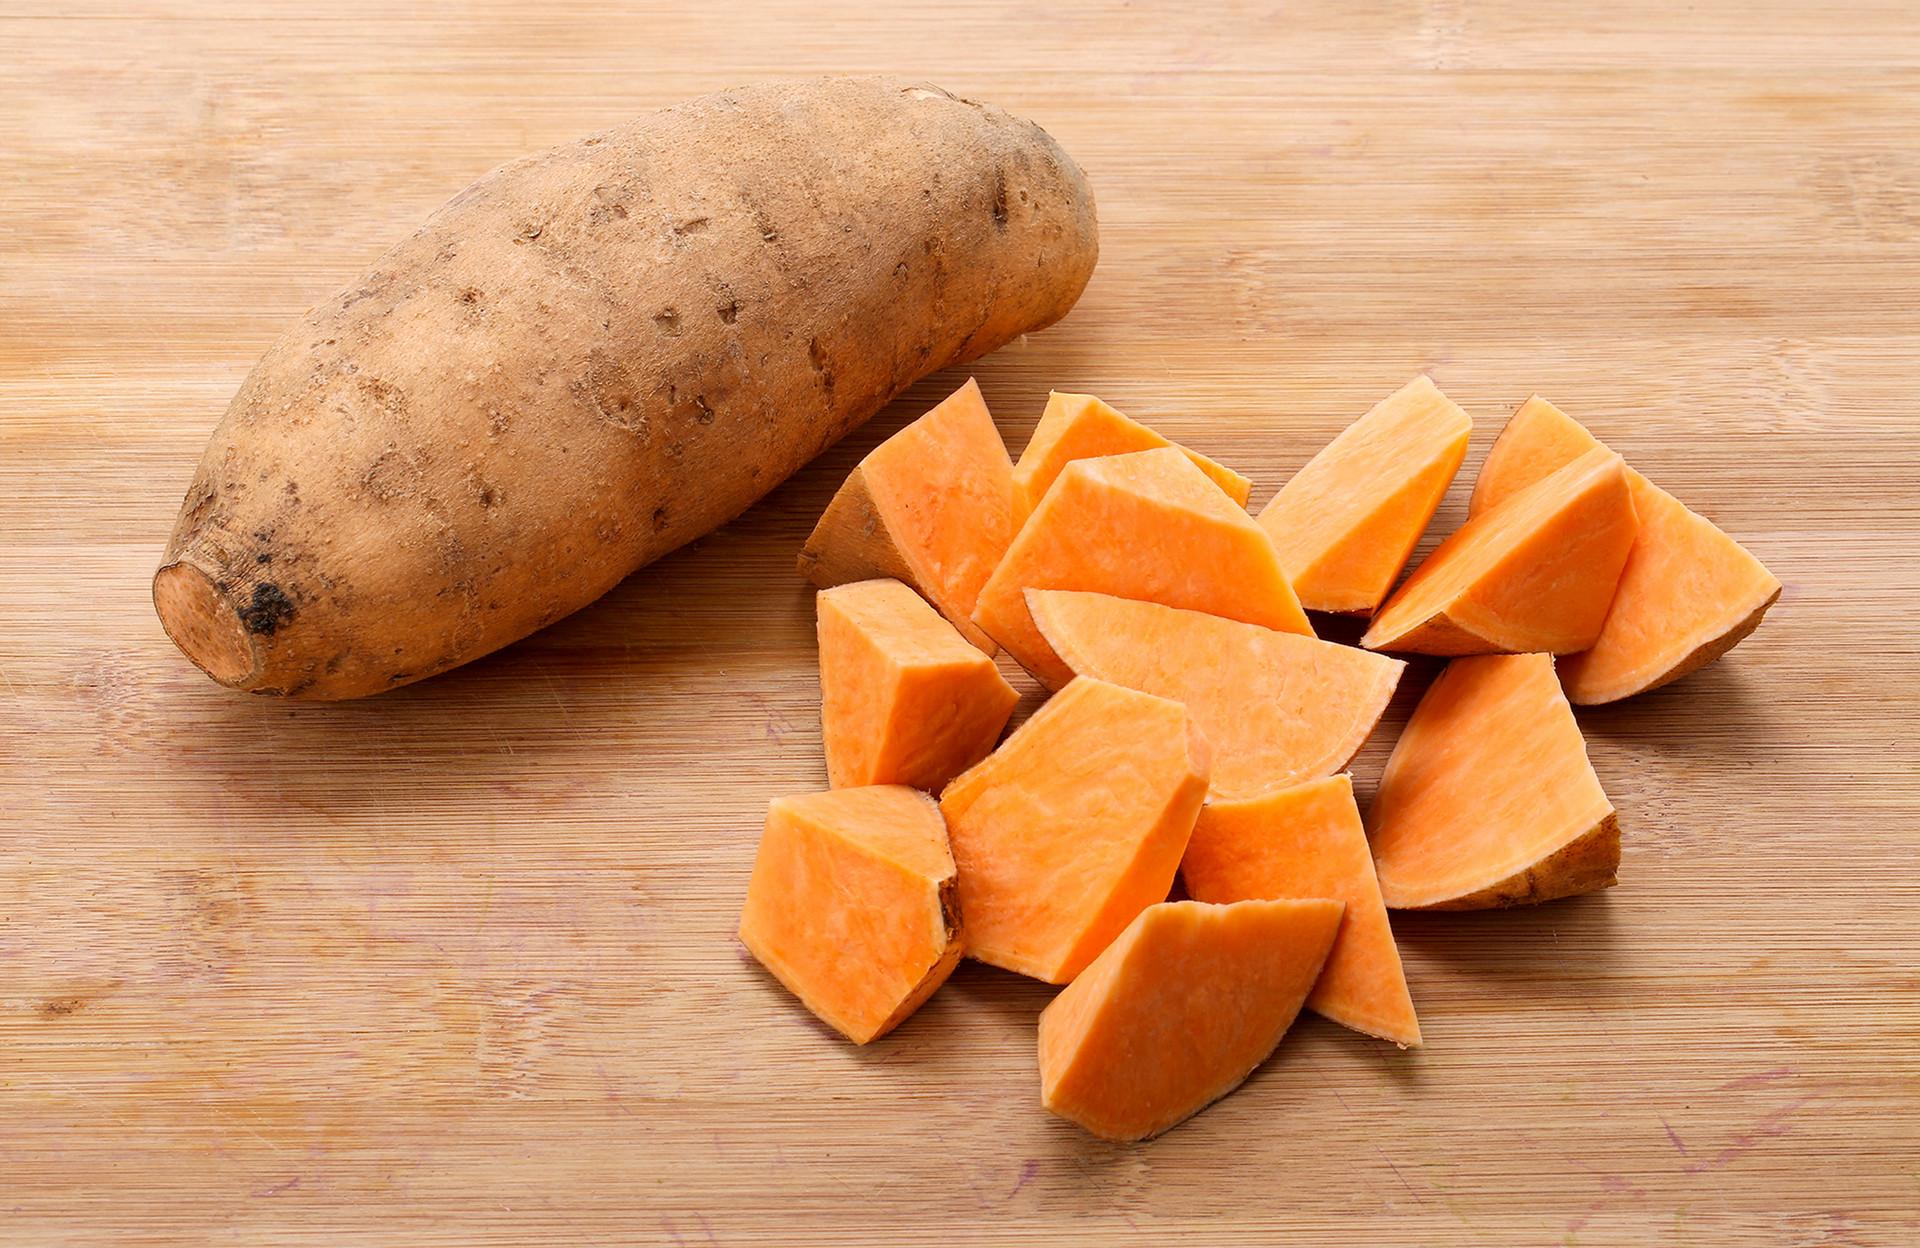 哺乳期红薯可以怎么吃好 红薯食谱推荐